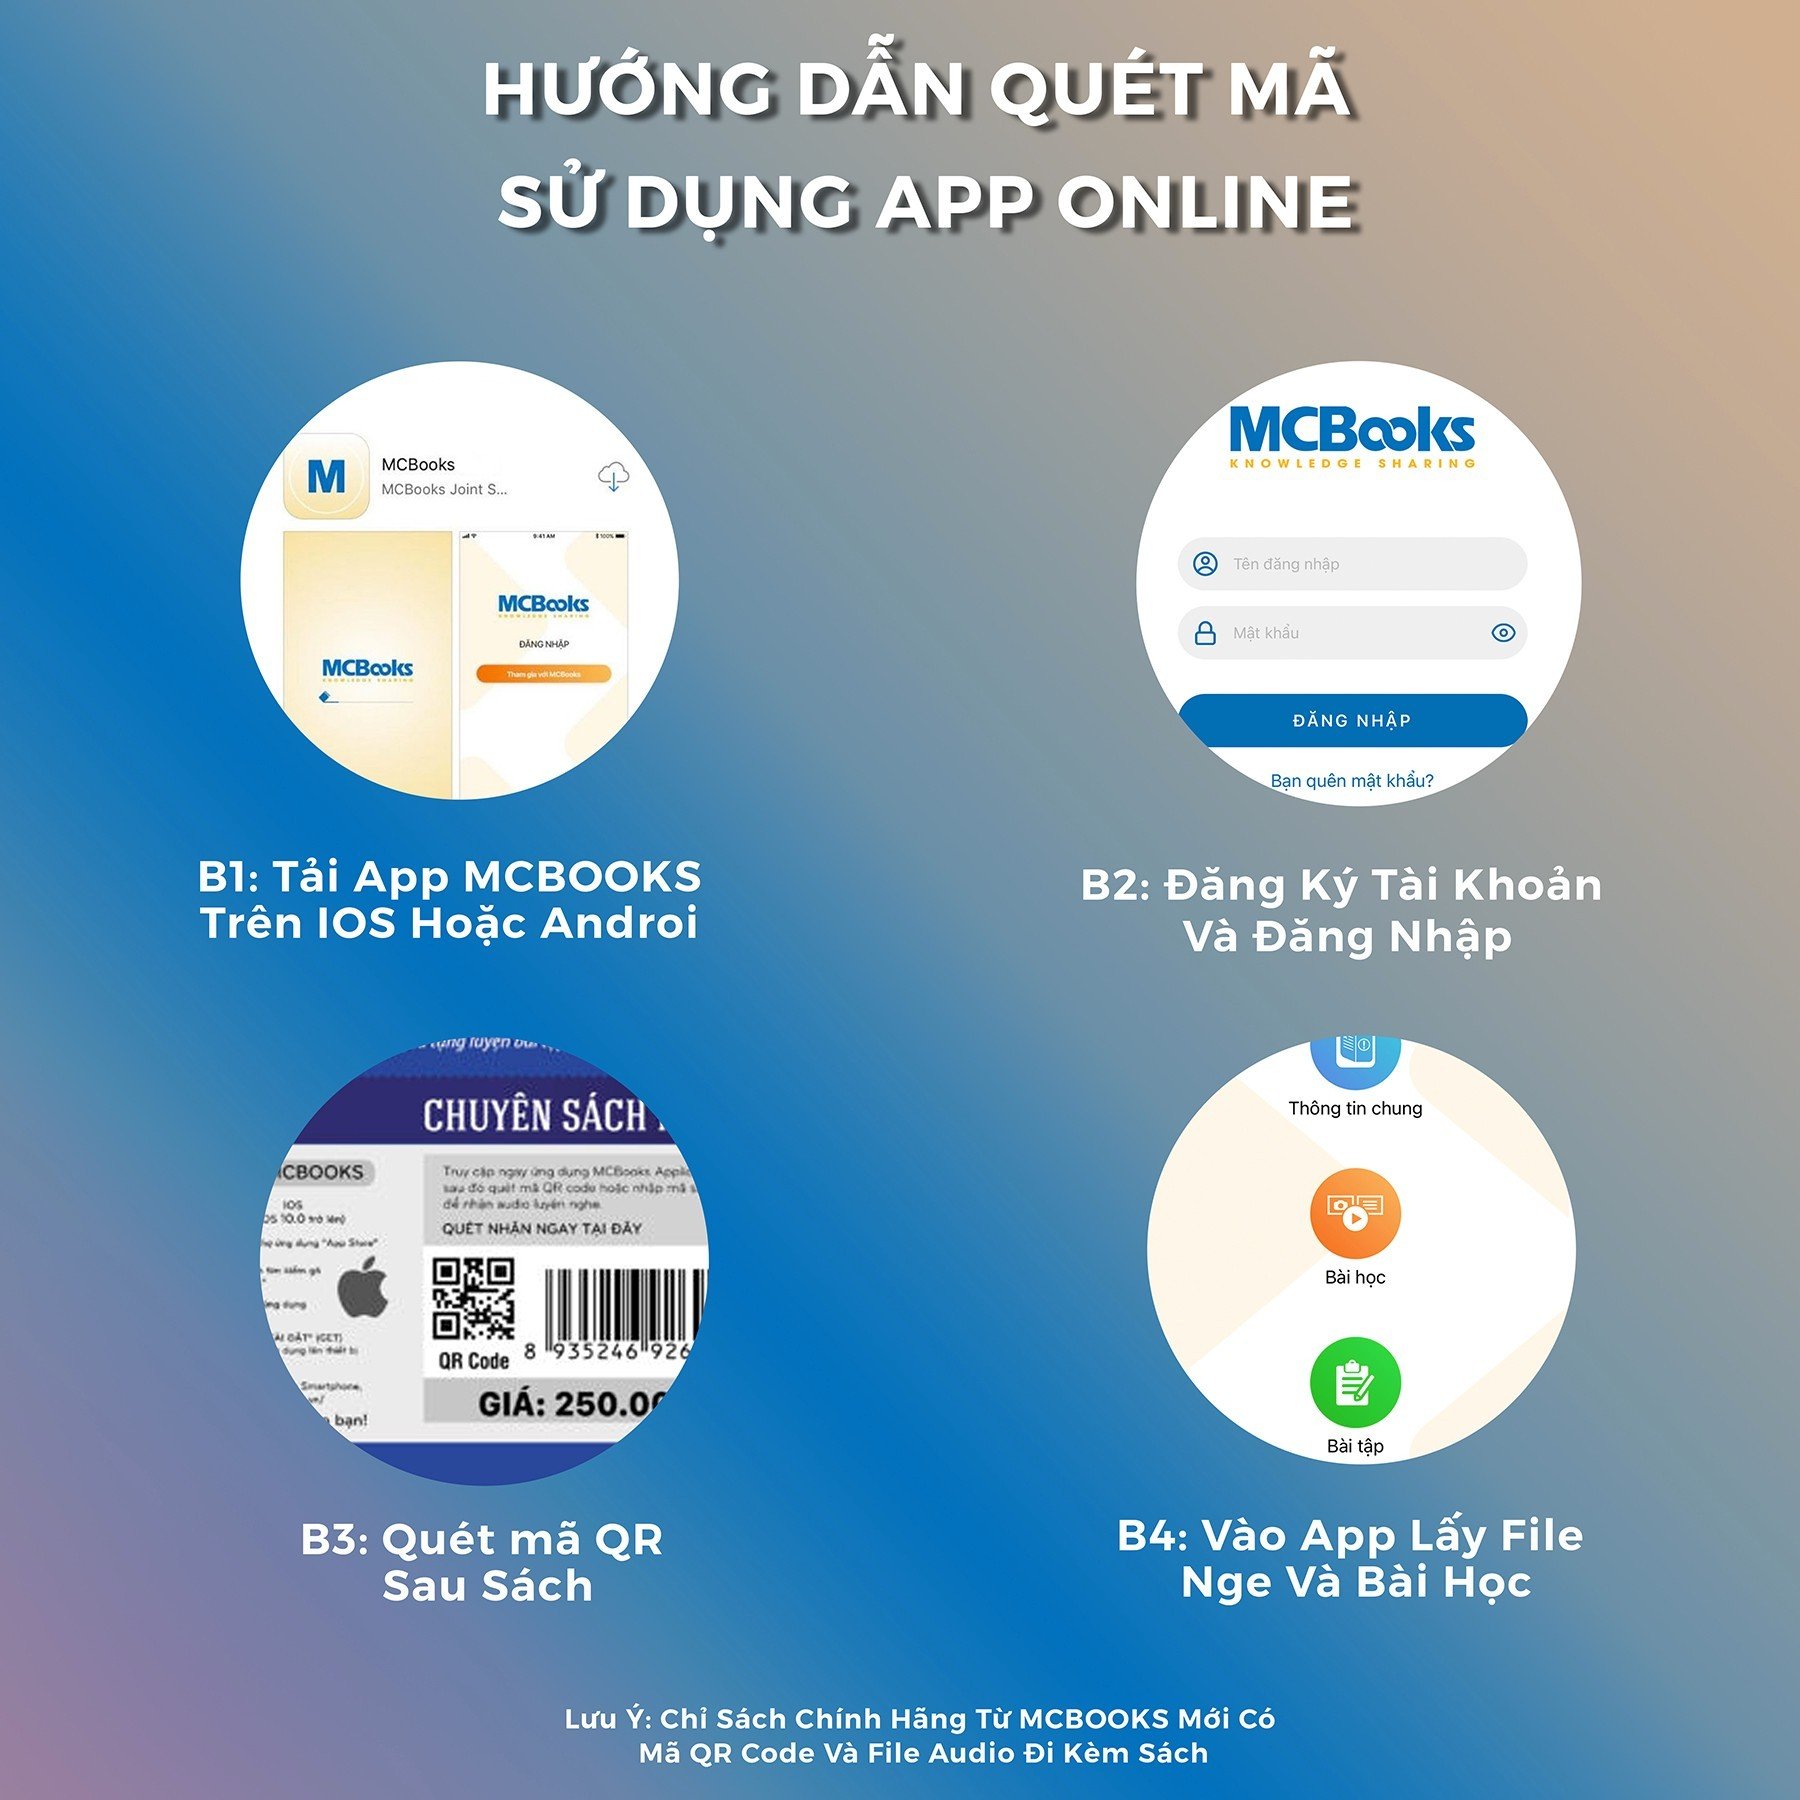 Sách - Tiếng Hàn tổng hợp dành cho người Việt Nam - sách bài tập sơ cấp 1 - McBooks